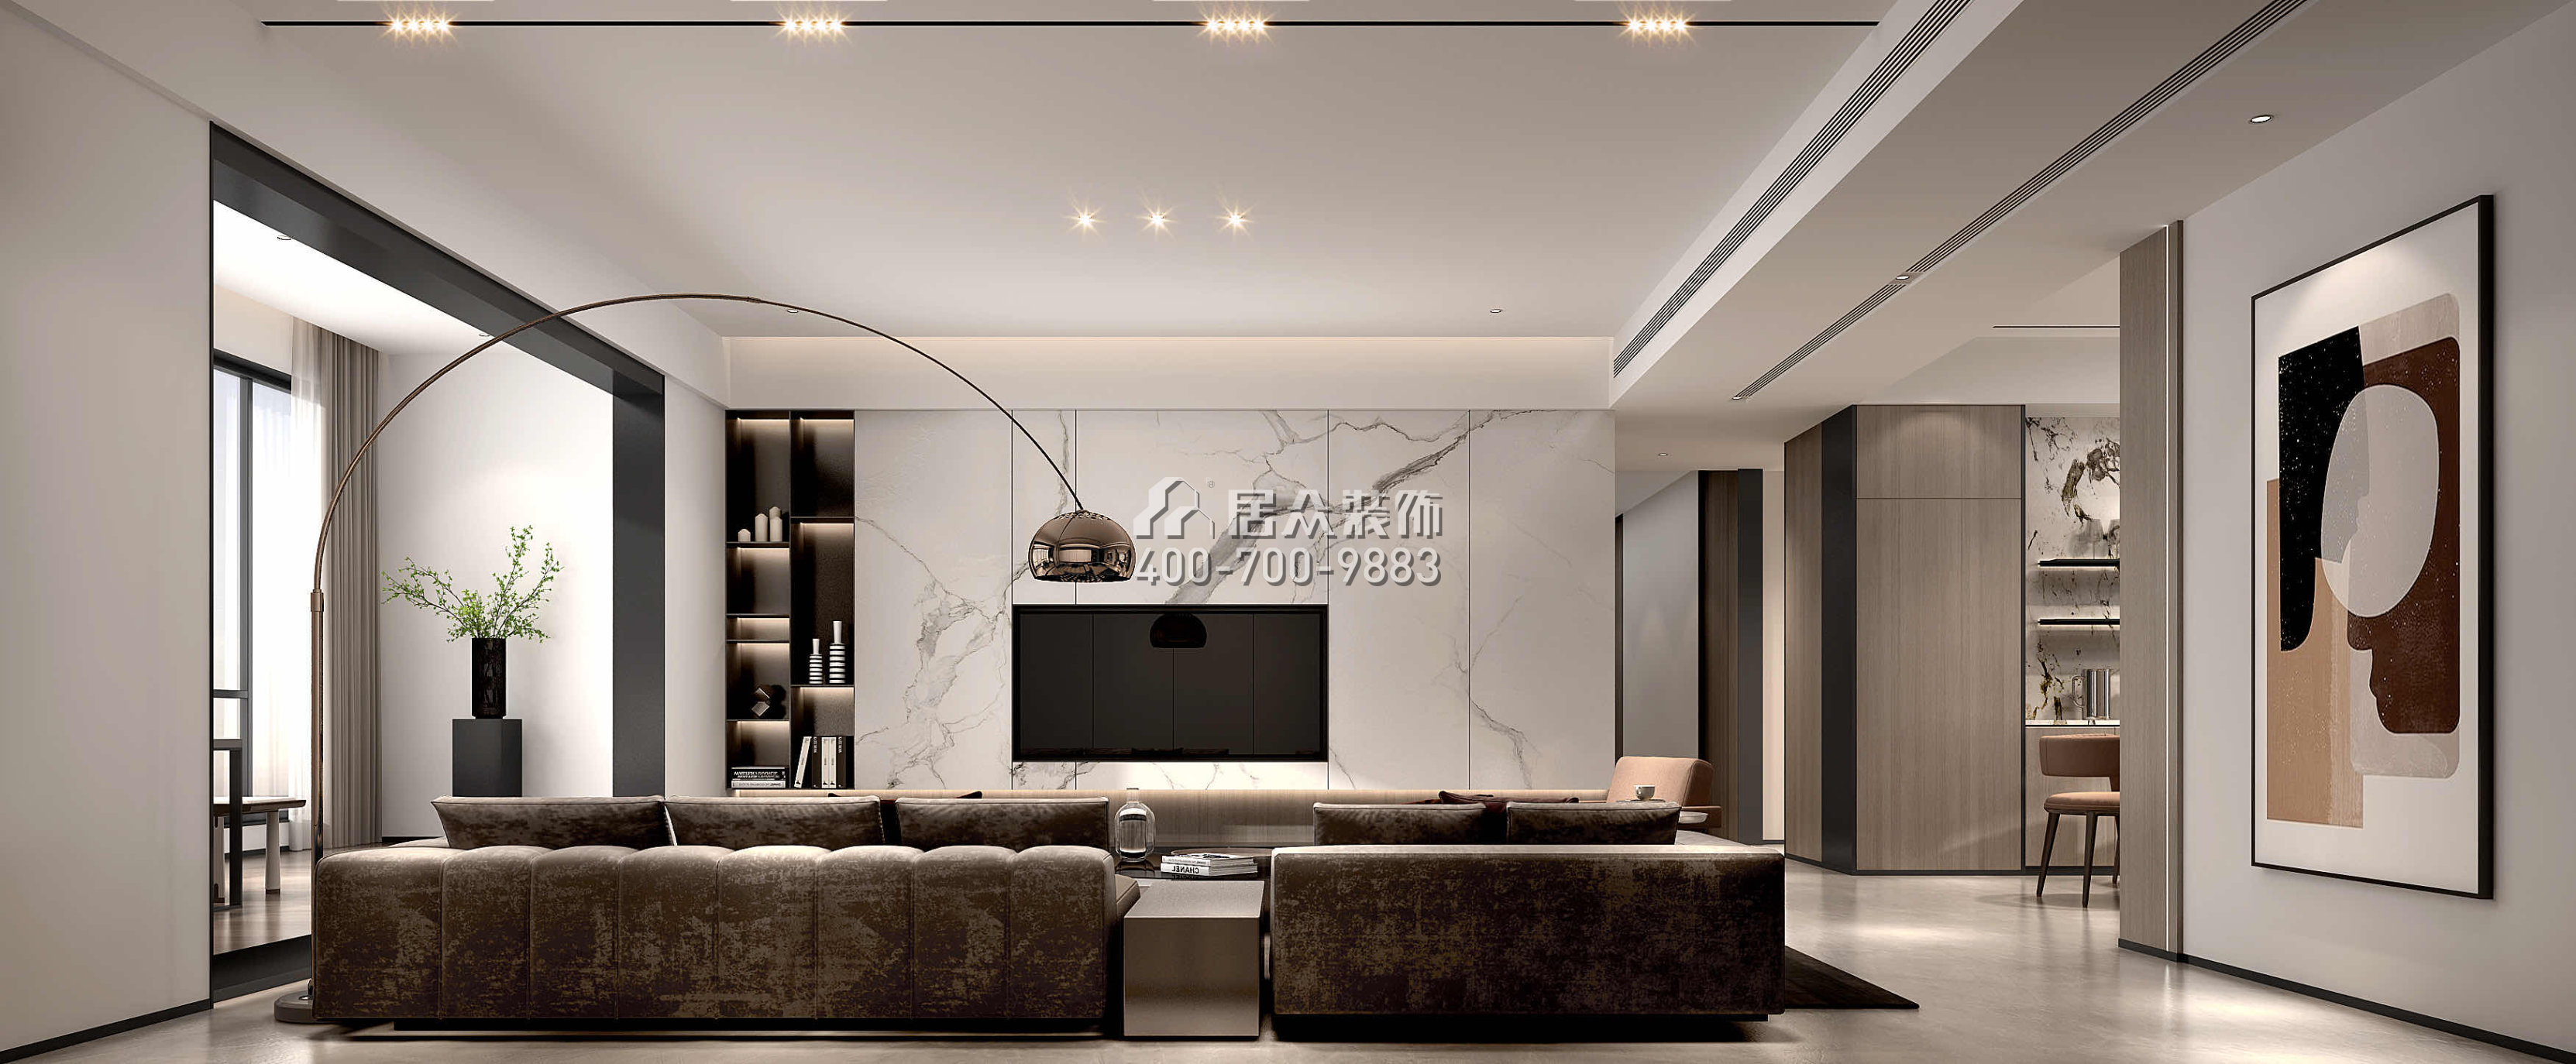 嘉華星際灣238平方米現代簡約風格平層戶型客廳裝修效果圖